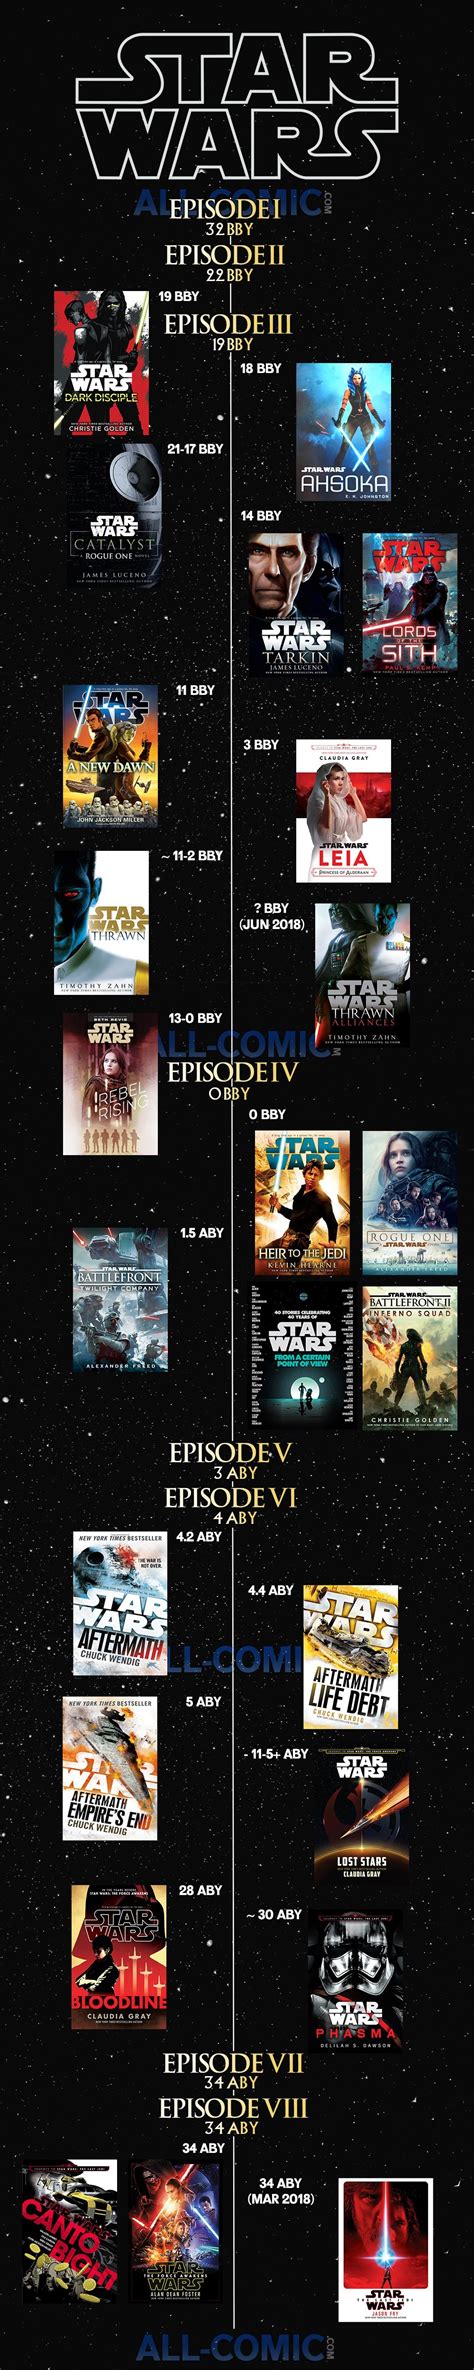 Star Wars Novel Timeline All